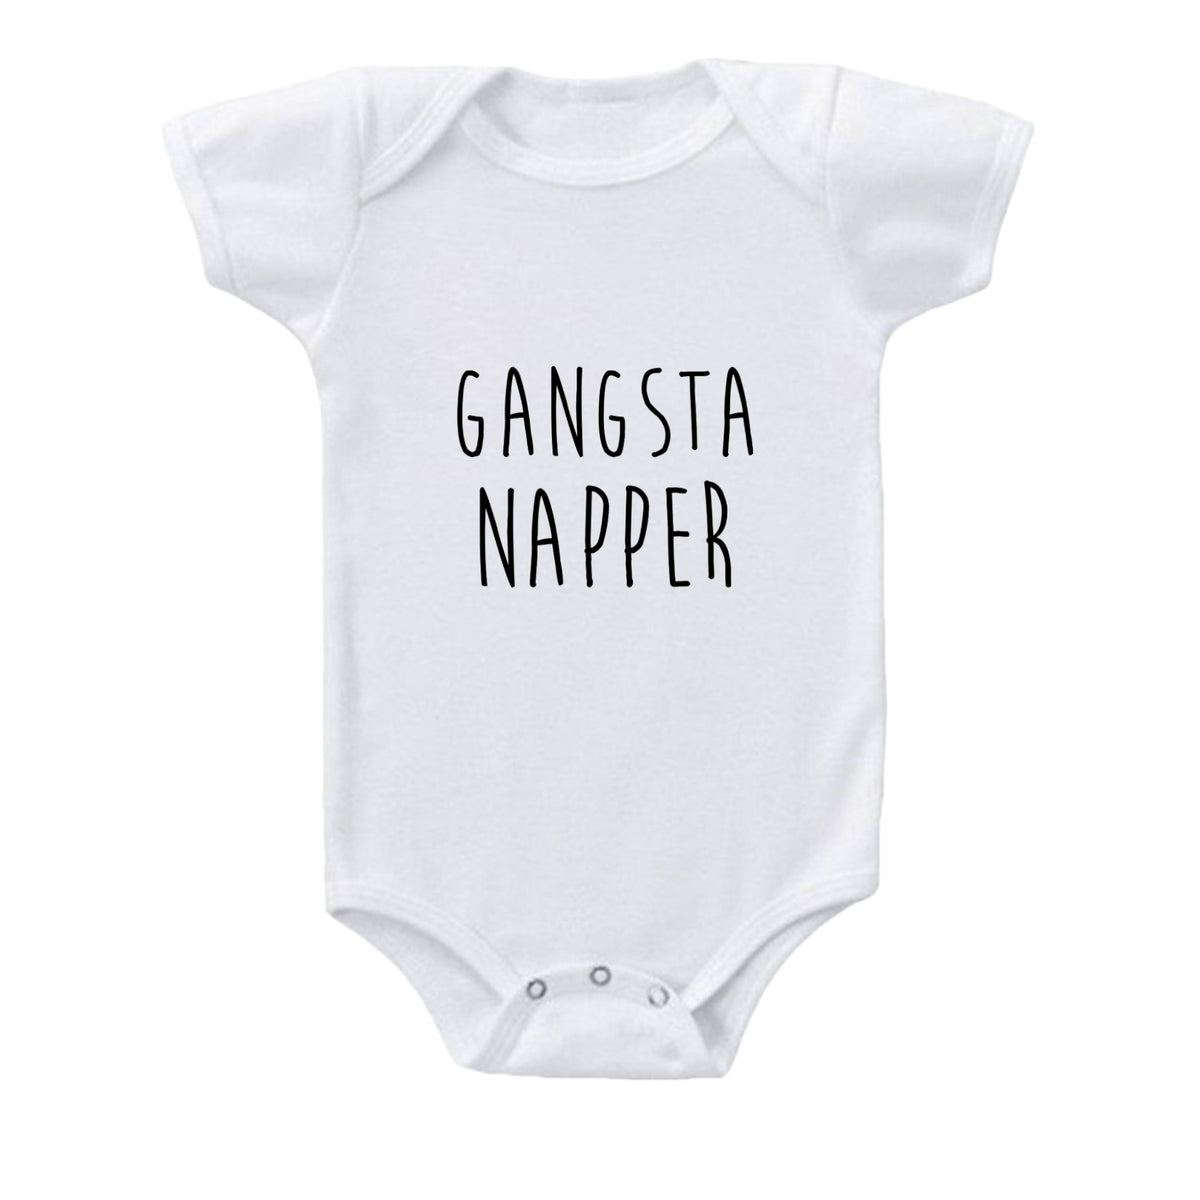 Gangsta Napper Baby Onesie